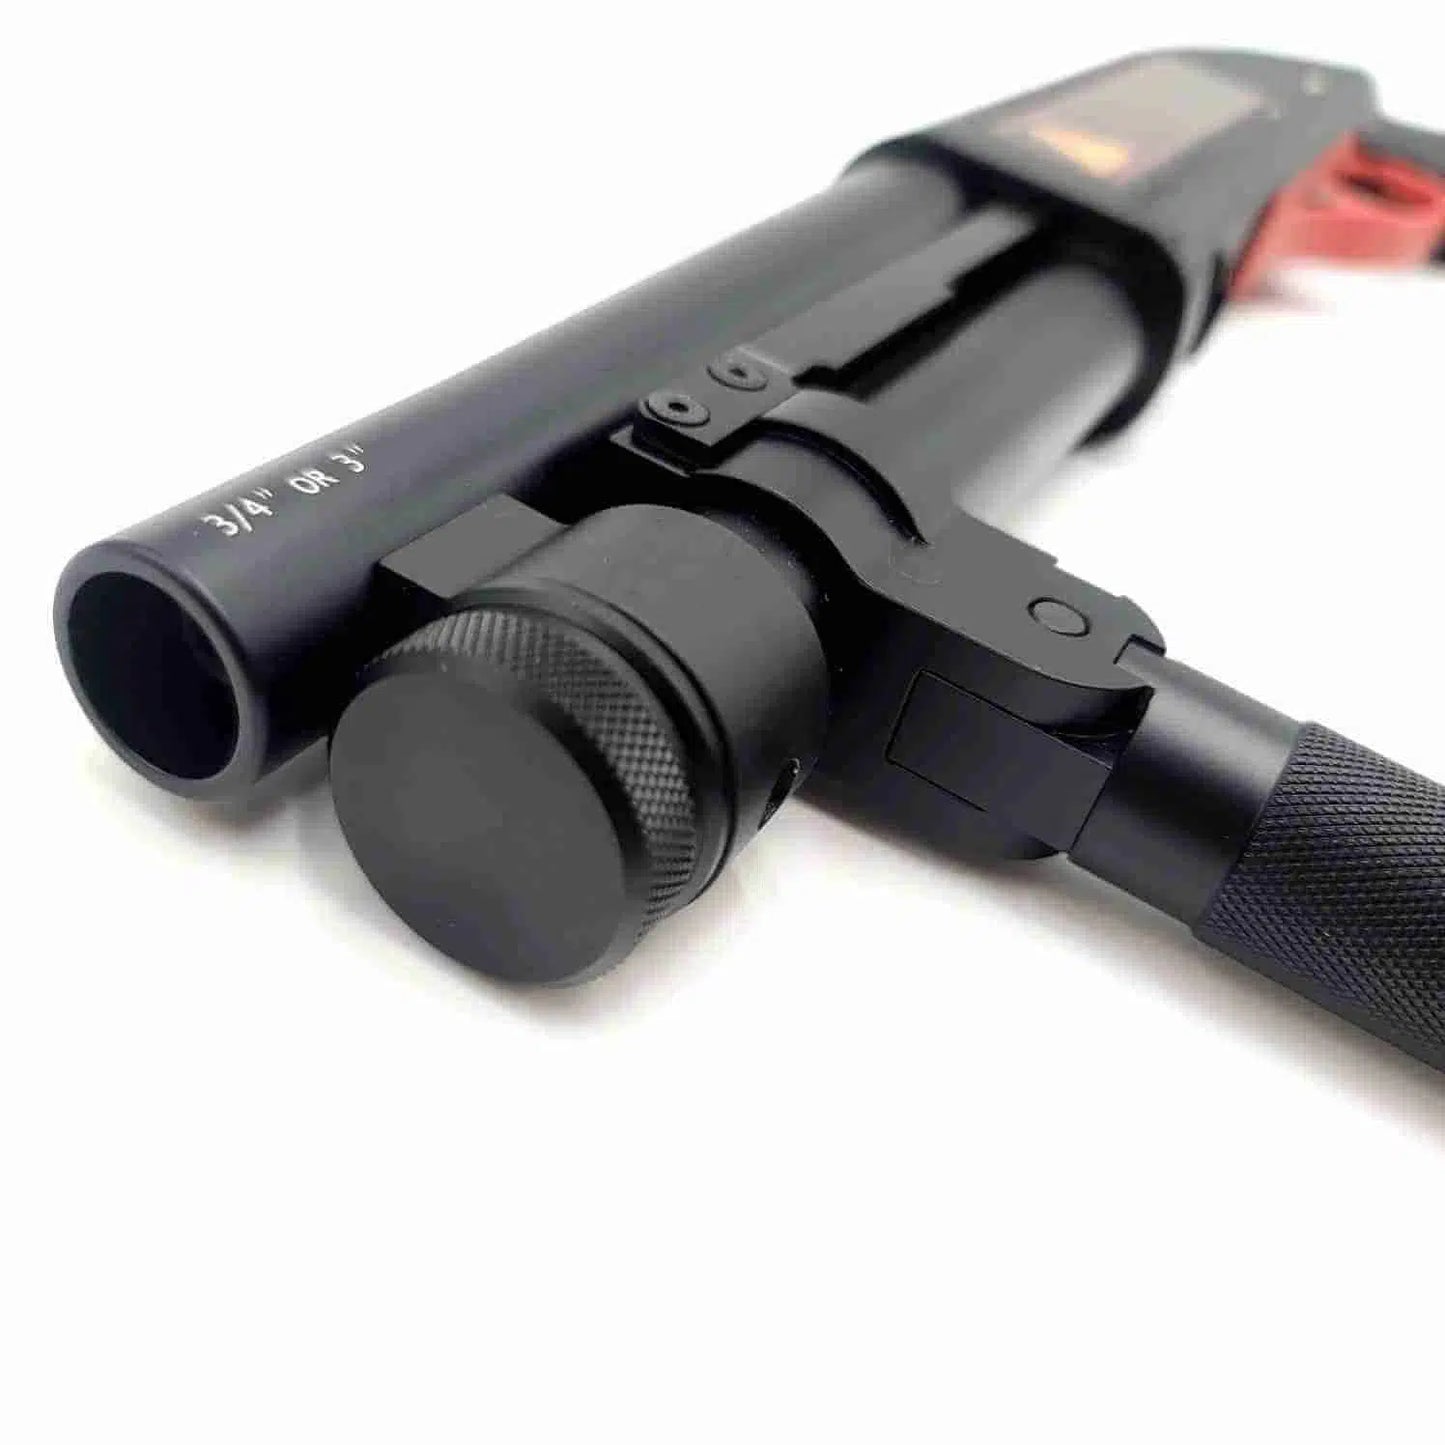 Alpha King AKA M870 R2 Sawed-Off Shotgun Gel Blaster-m416 gel blaster-m416gelblaster